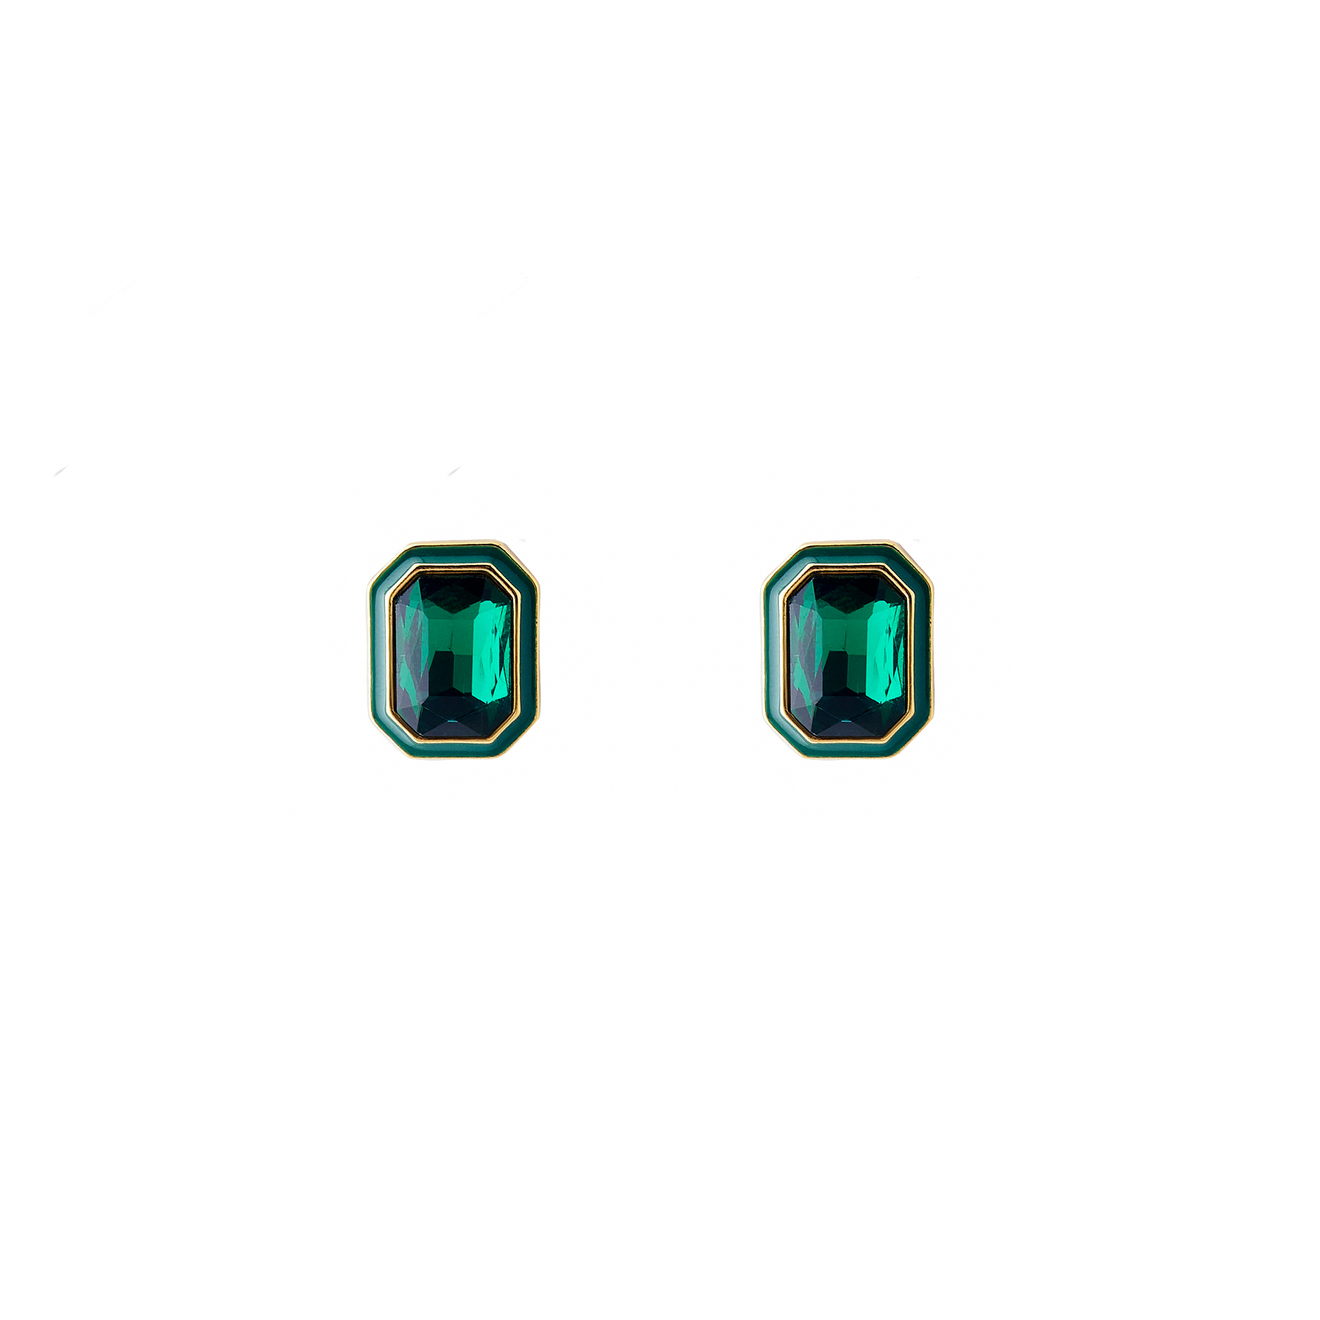 Herald Percy Крупные золотистые серьги с зелеными кристаллами и зеленой эмалью herald percy золотистые серьги с зелеными кристаллами и розовыми овальными подвесками